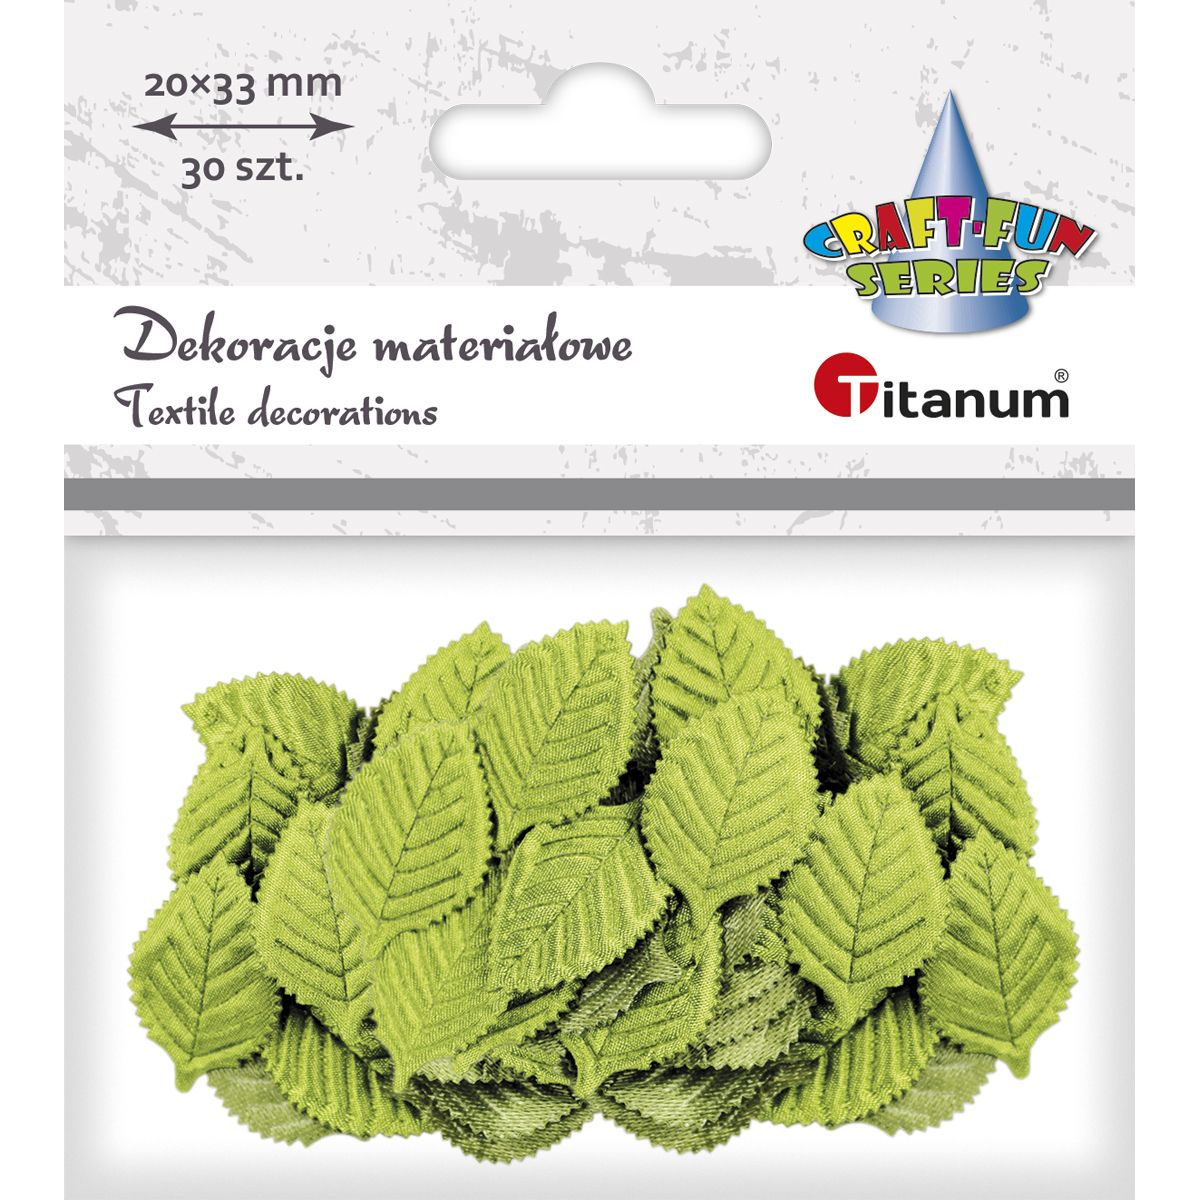 Listki materiałowe Titanum Craft-Fun Series zielone